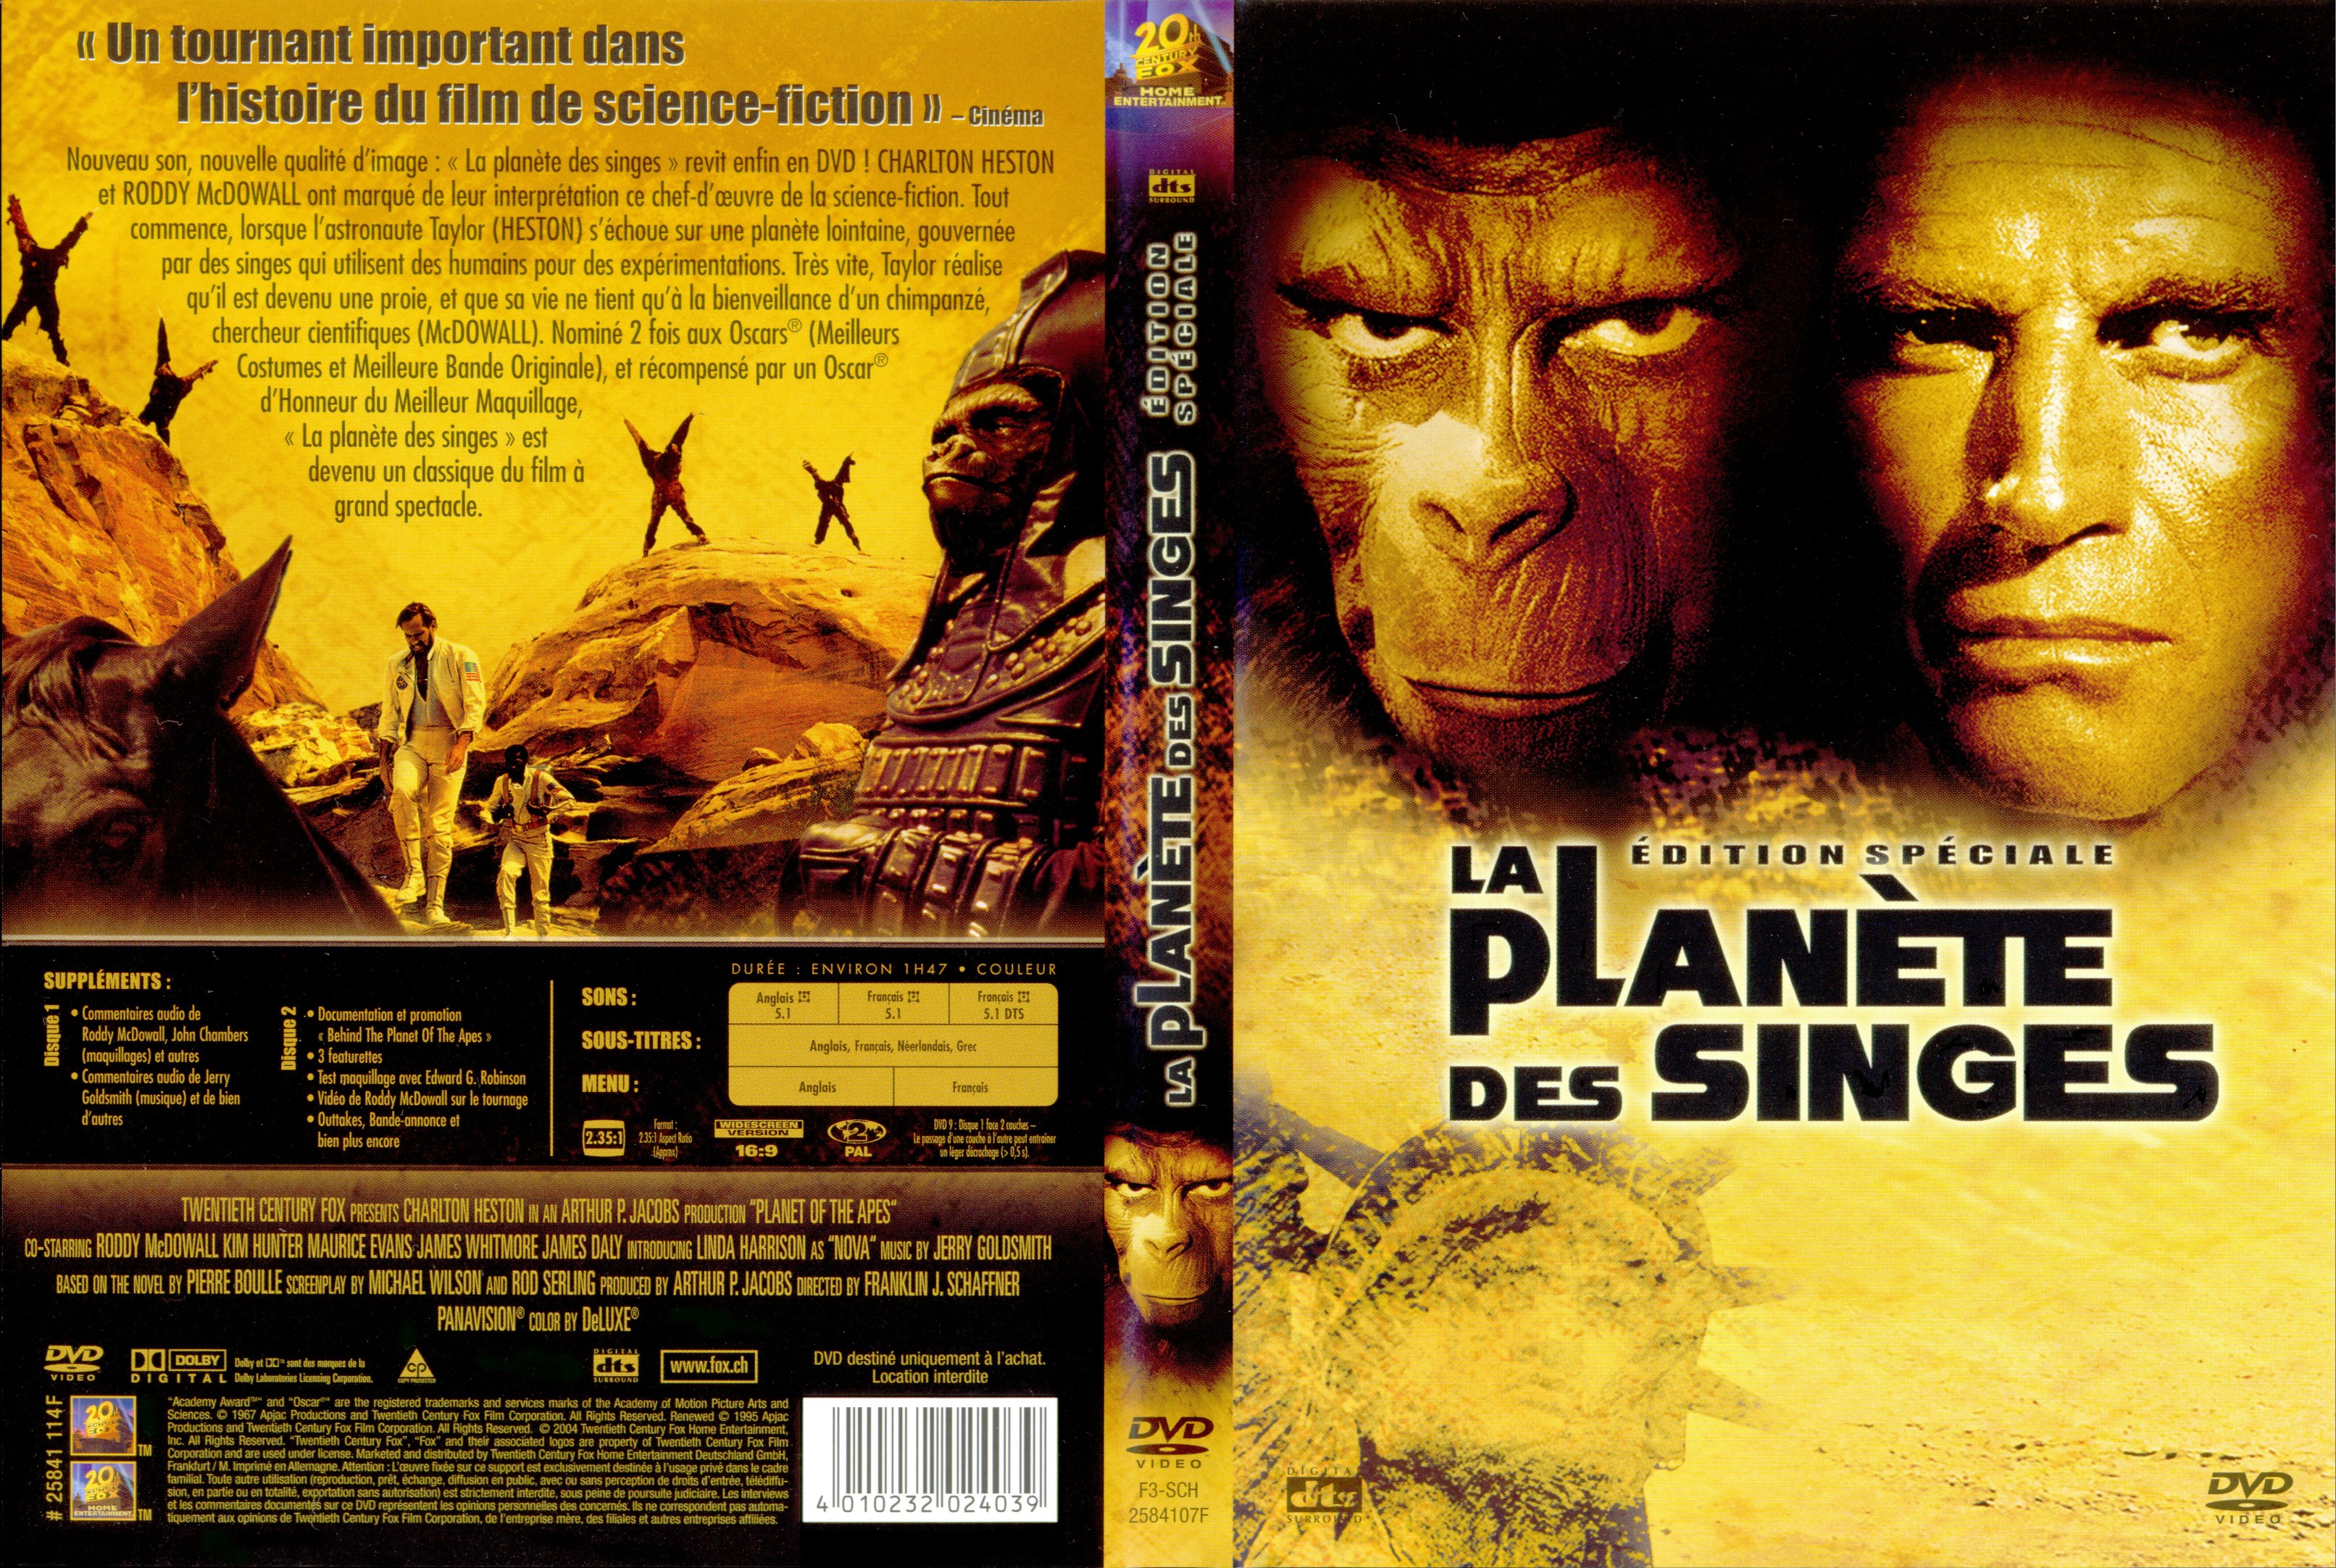 Jaquette DVD La planete des singes 1967 v2